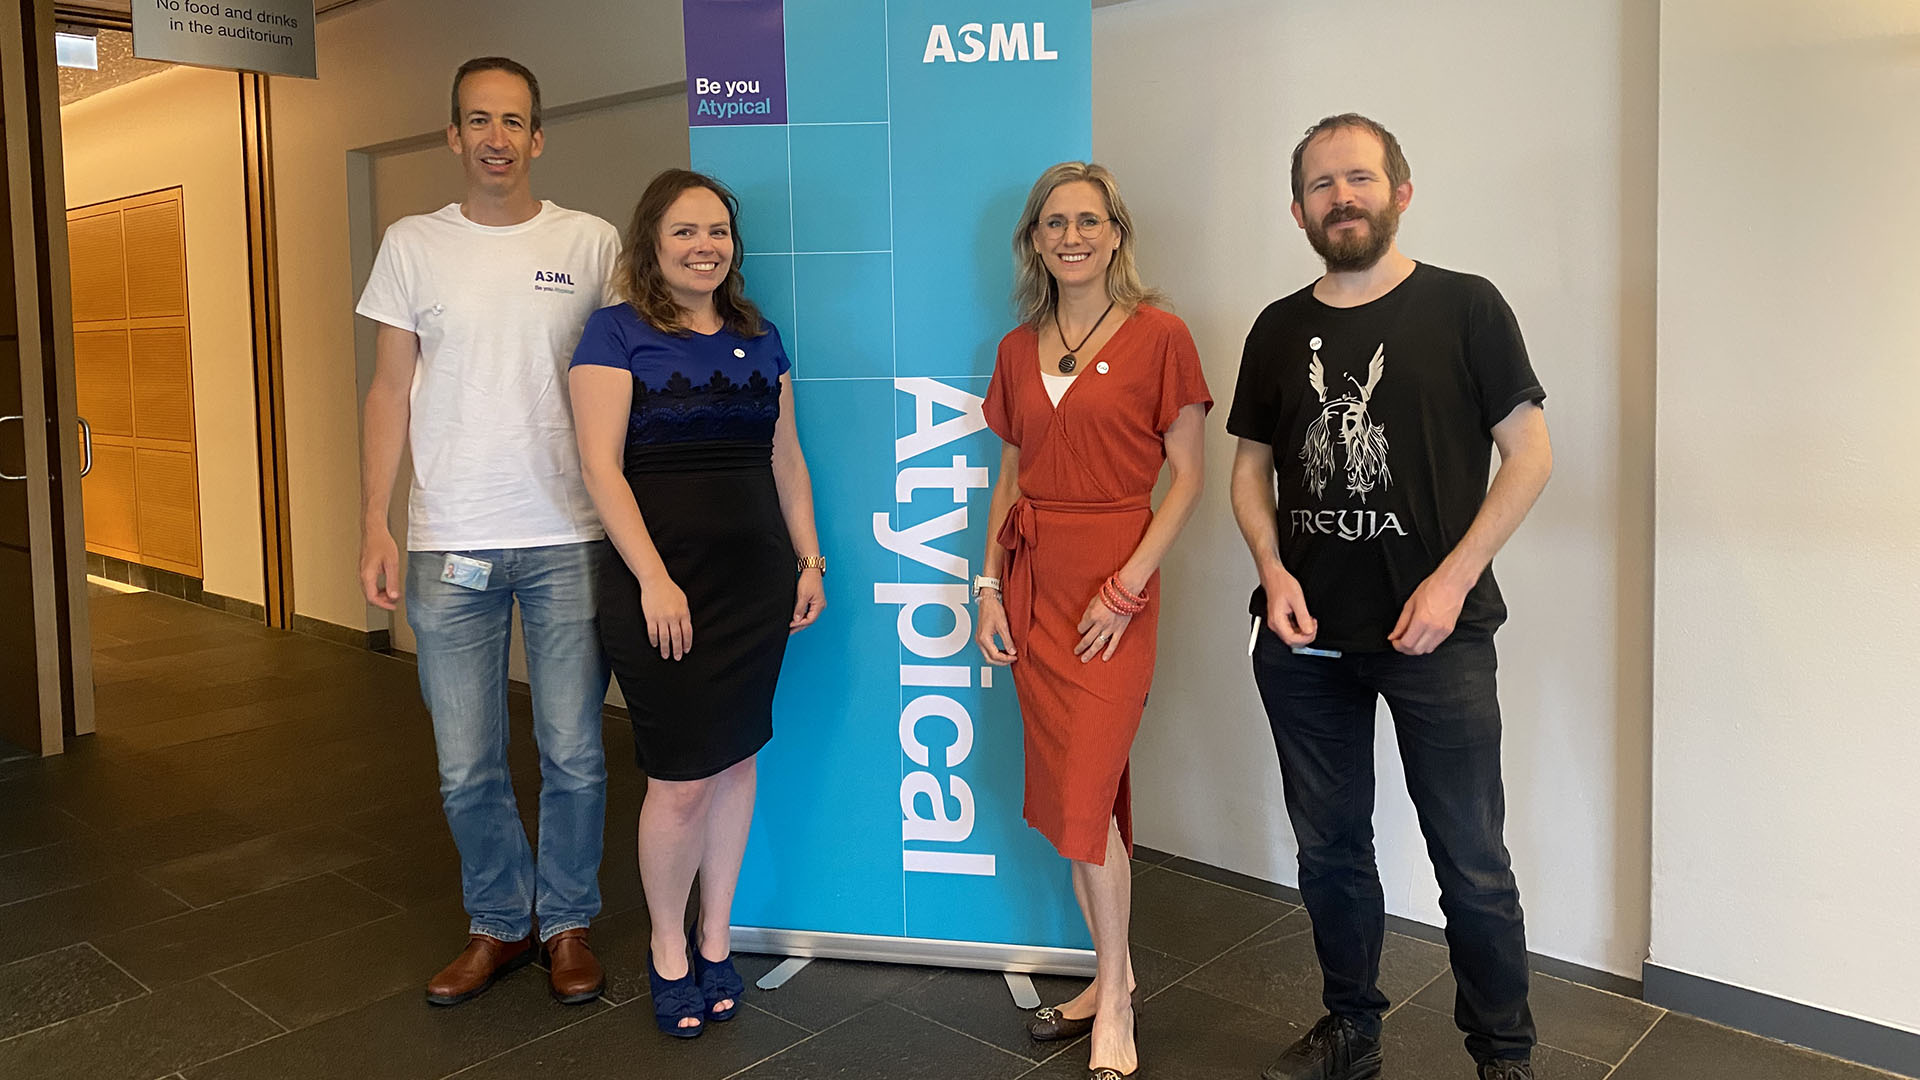 ASML神经多样性员工网络董事会成员站在带有“非典型”名称的横幅旁边。